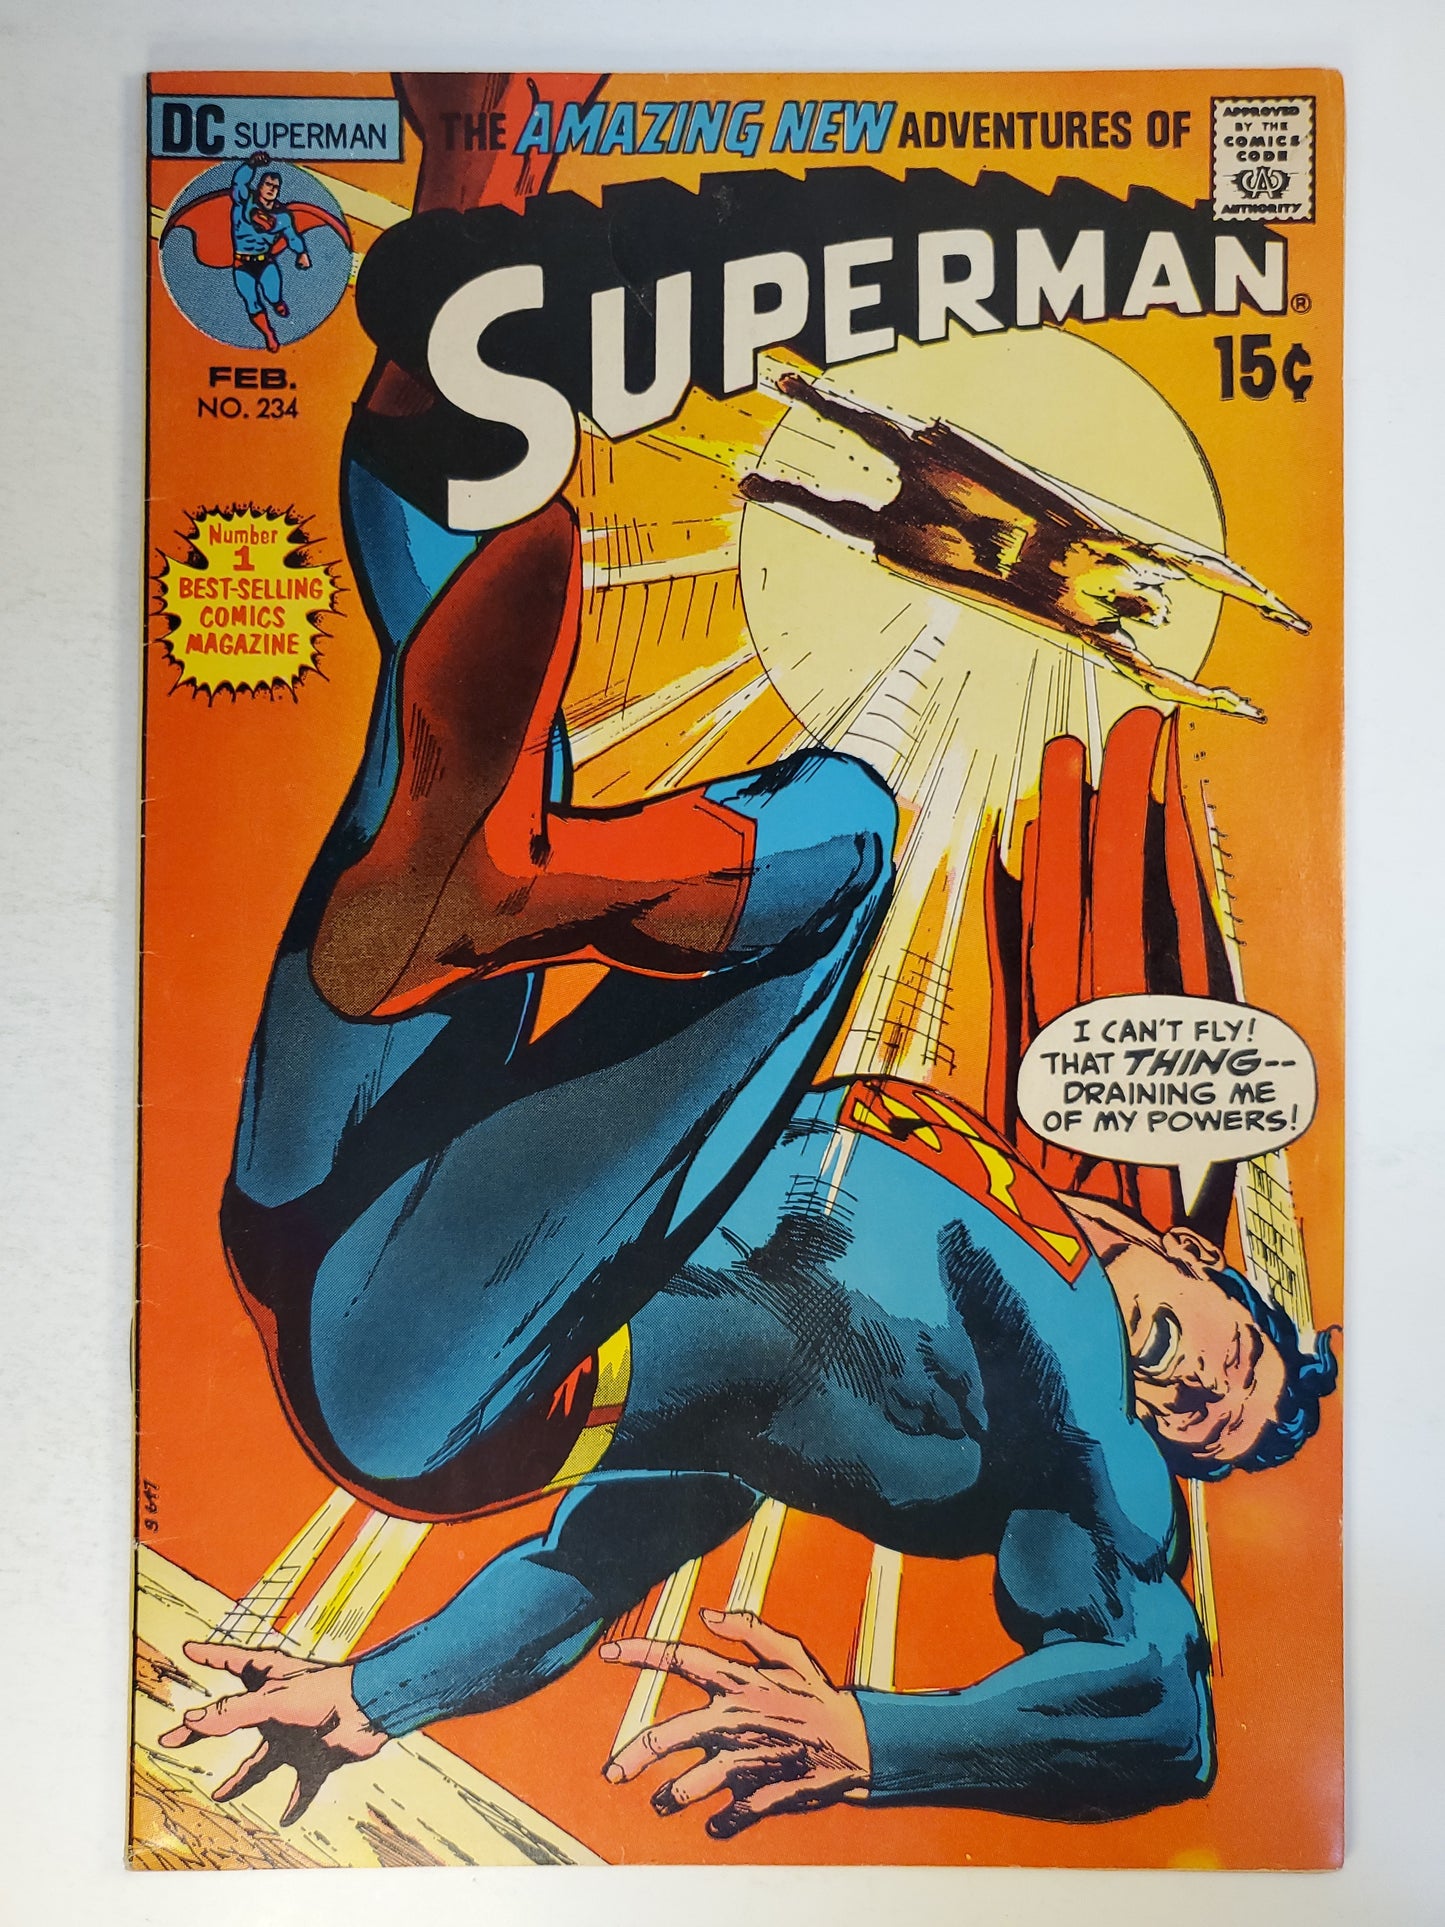 DC Superman Vol 1 #234